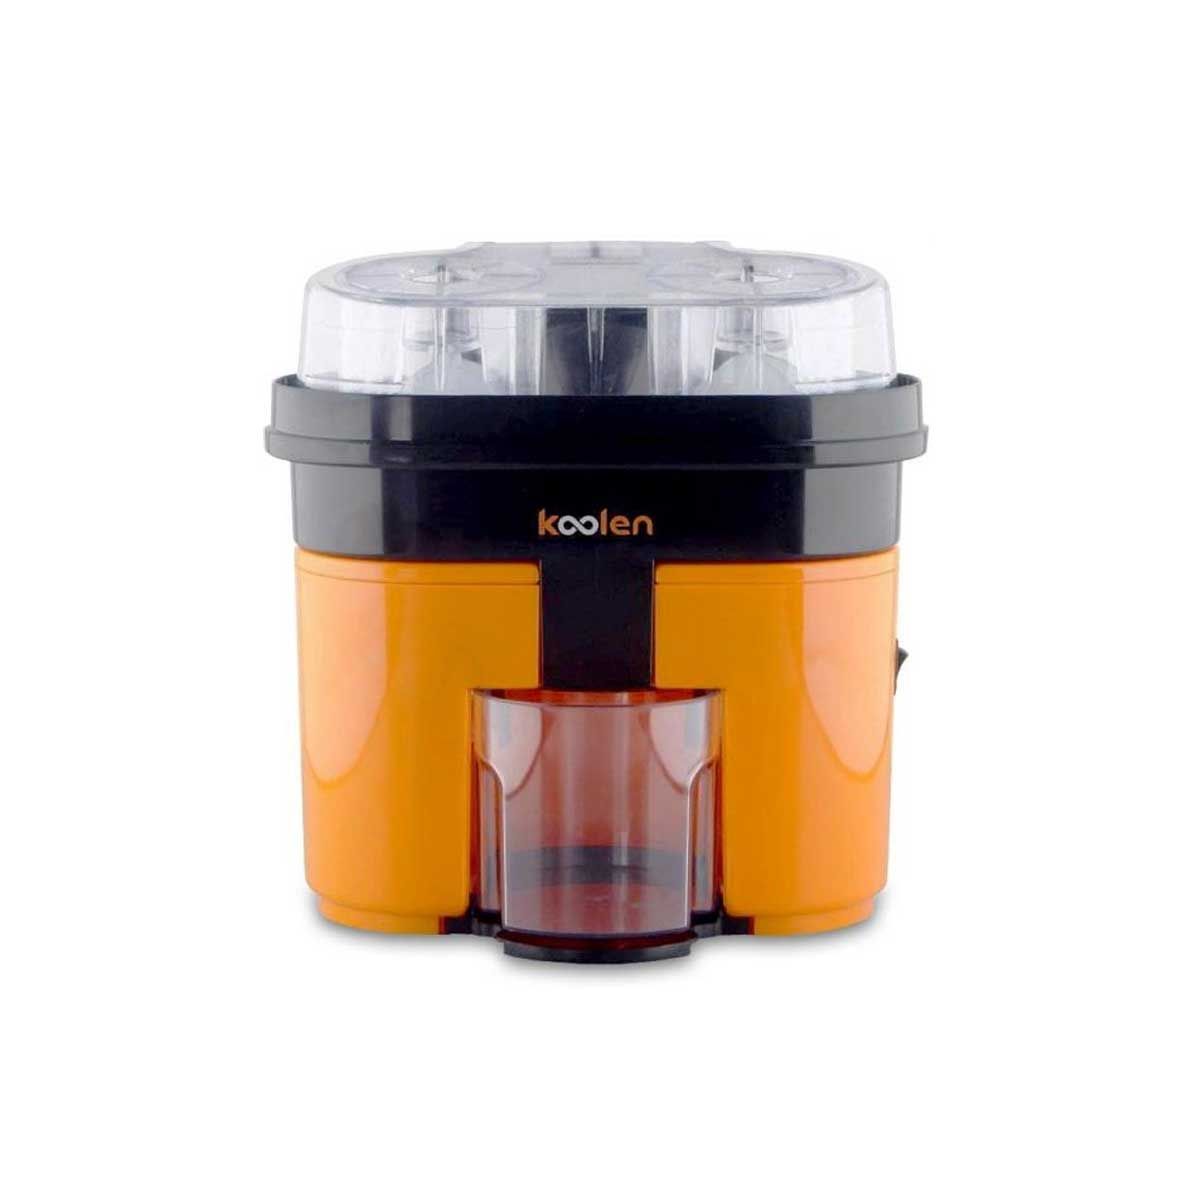 KOOLEN Citrus Twin Juicer, 90W, Black/Orange - 801100002